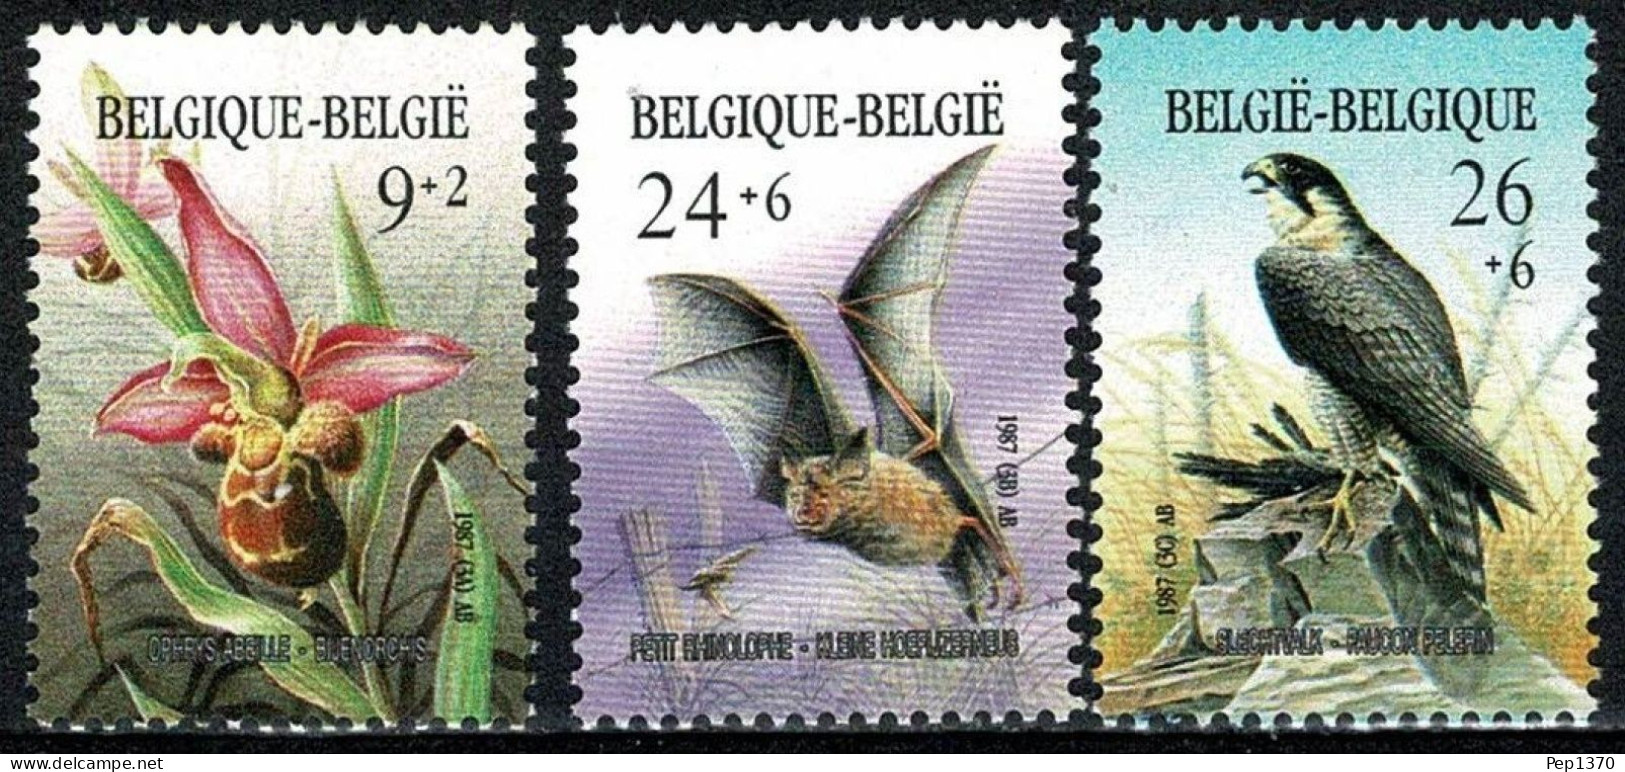 BELGICA 1987 - BELGIQUE - BELGIUM - FLORES Y PAJAROS - YVERT Nº 2244/2246** - Orchideeën